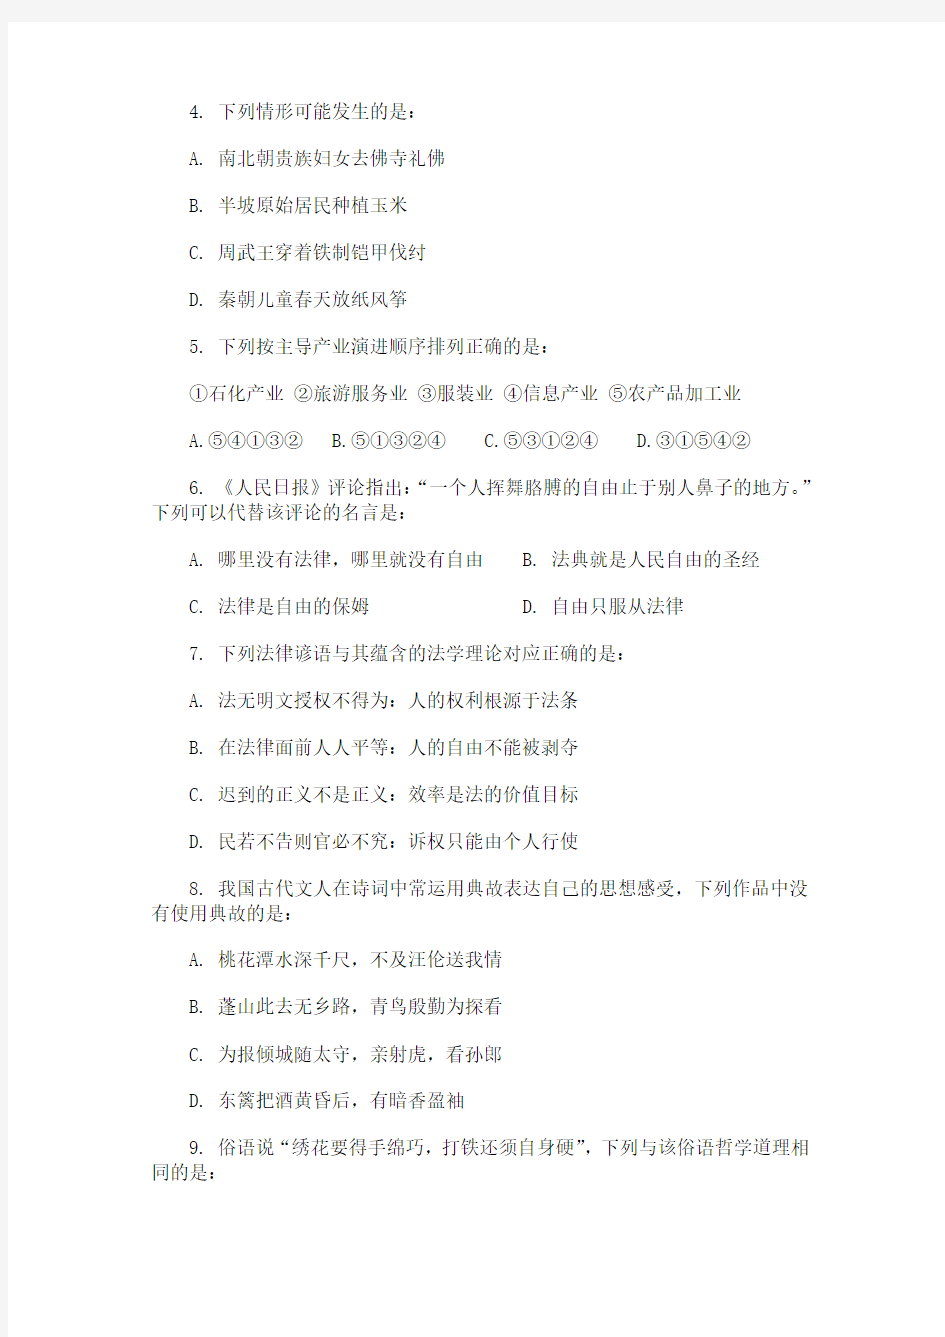 2014年度河南省公务员考试行测真题及答案(完整版)